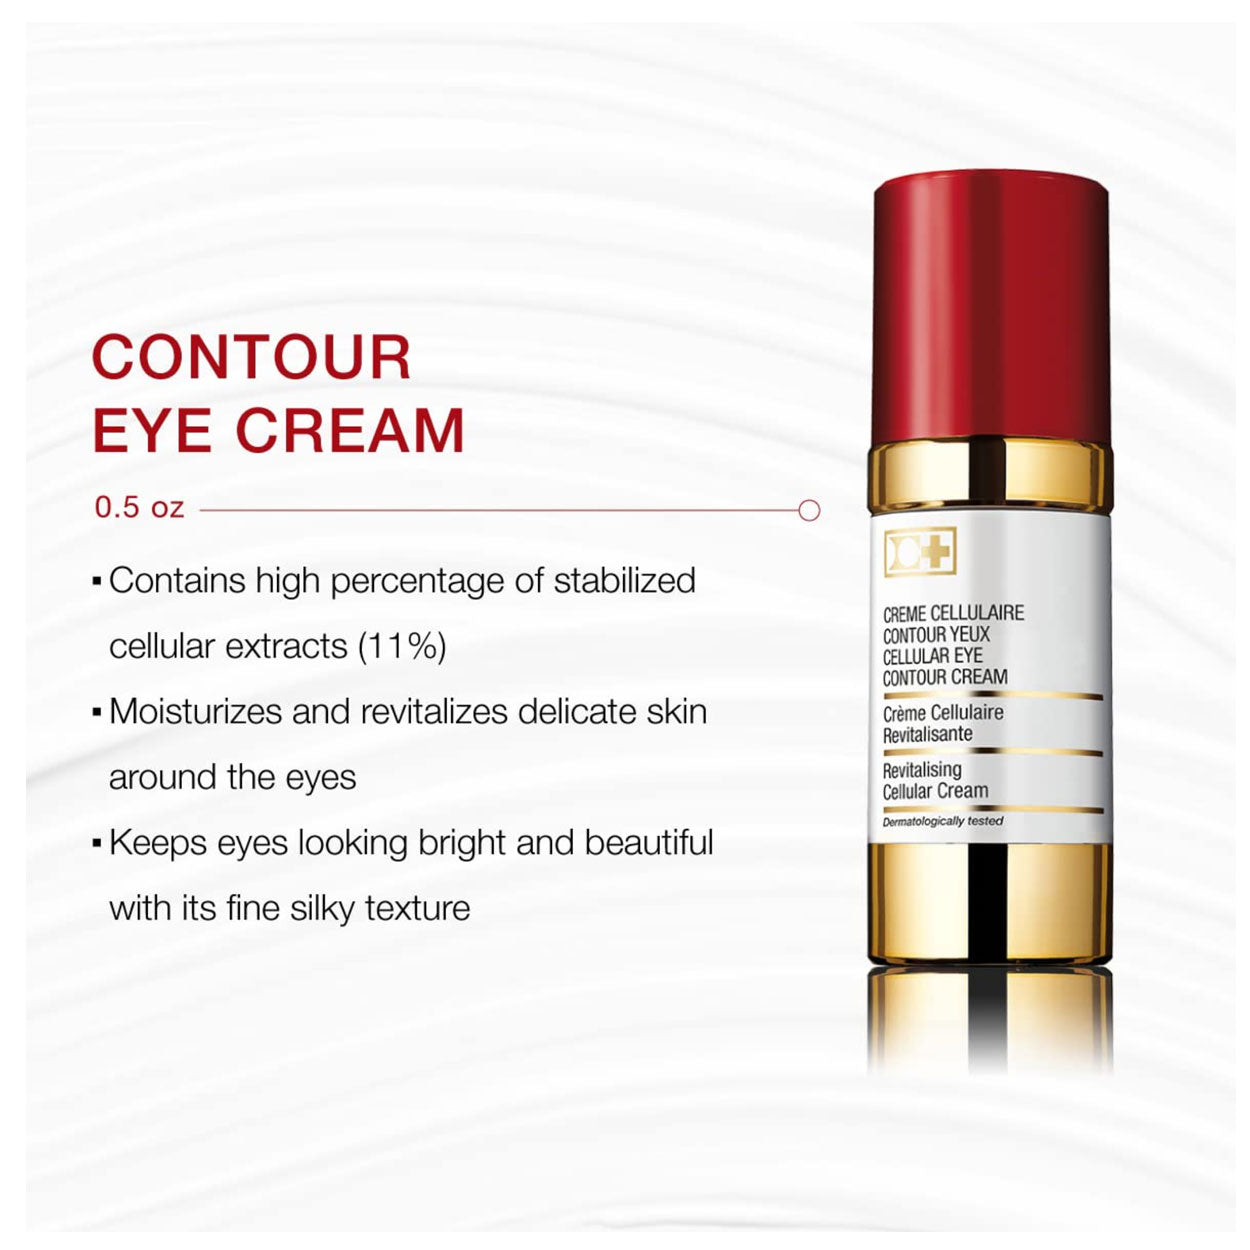 Cellular Eye Contour Cream